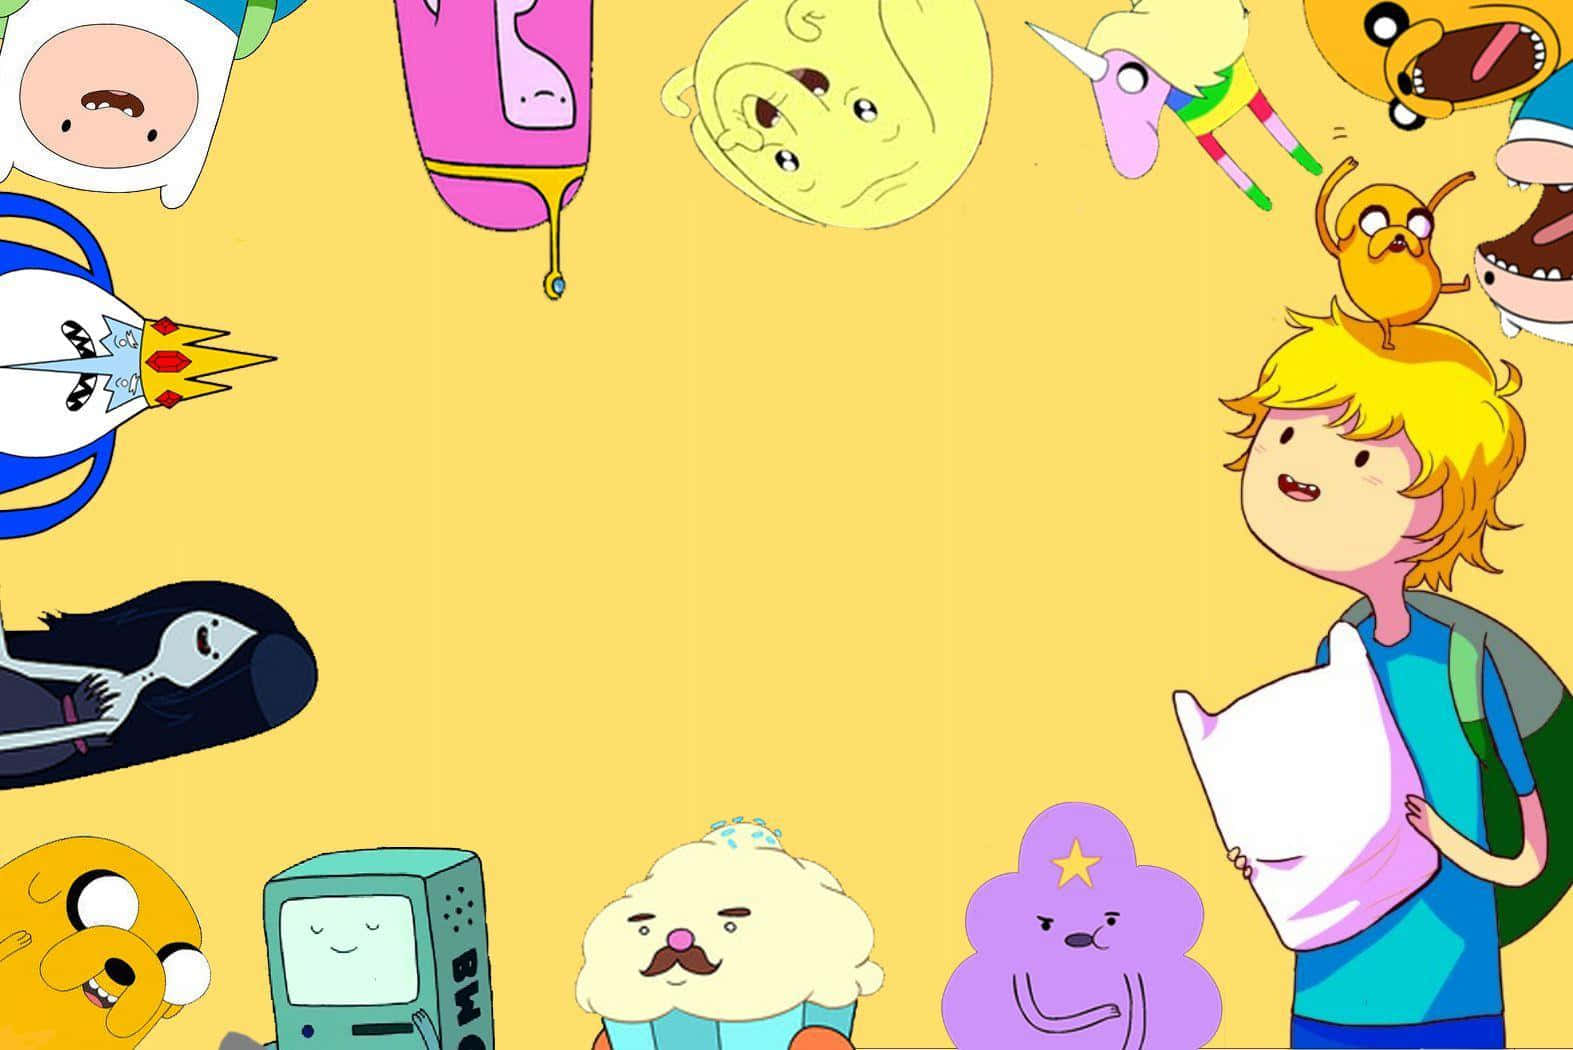 Willkommenin Der Welt Von Adventure Time!